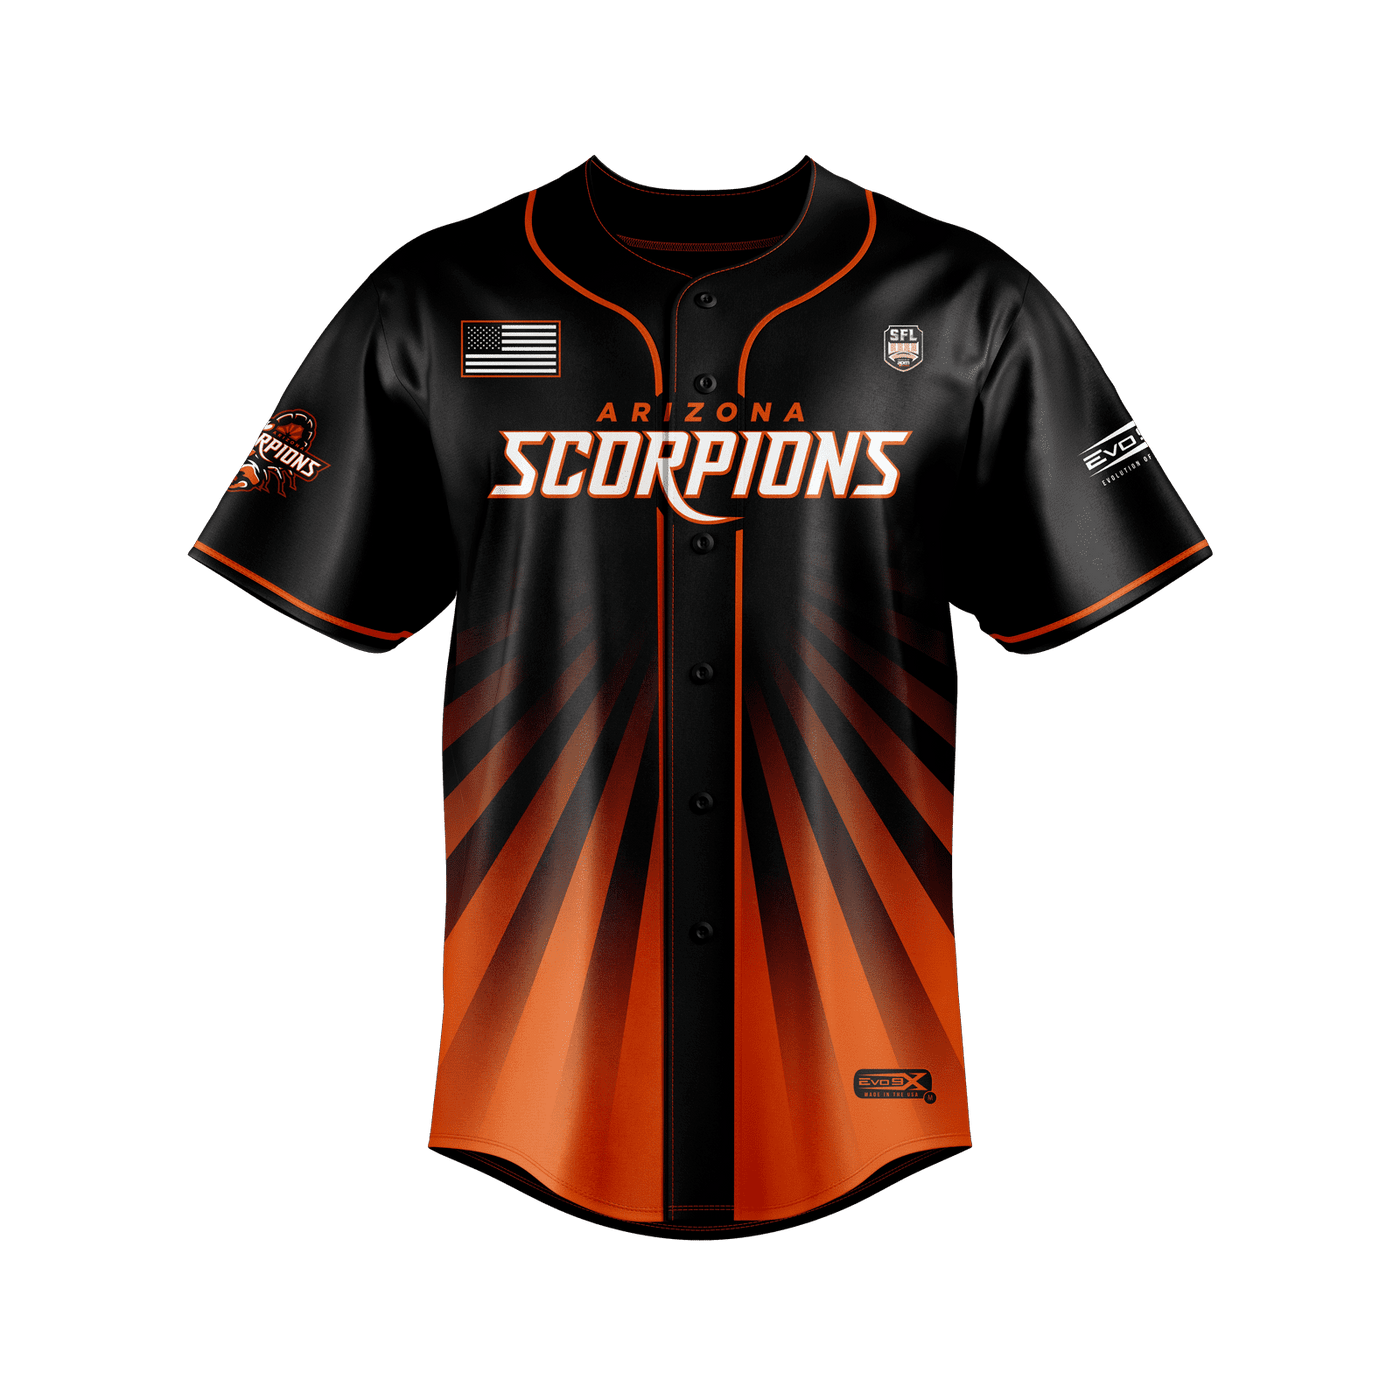 Arizona scorpions Pro Baseball Jersey